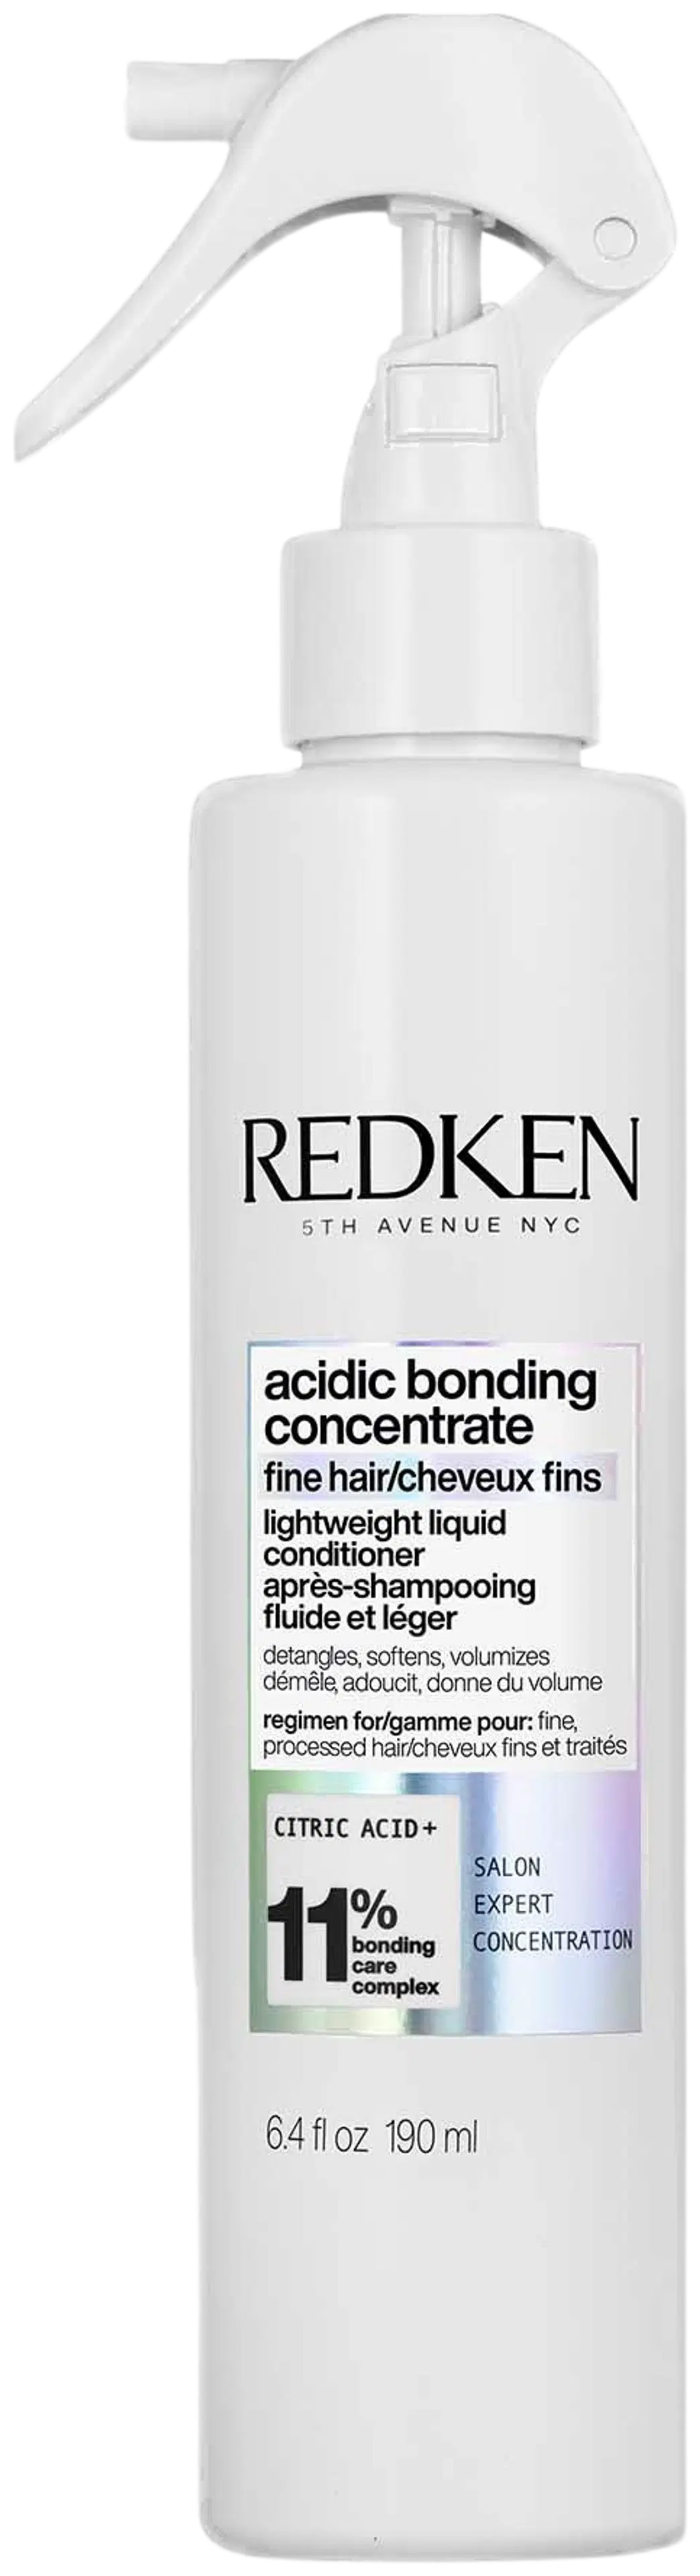 Redken Acidic Bonding Concentrate Lightweight Liquid Conditioner hoitoaine 190 ml